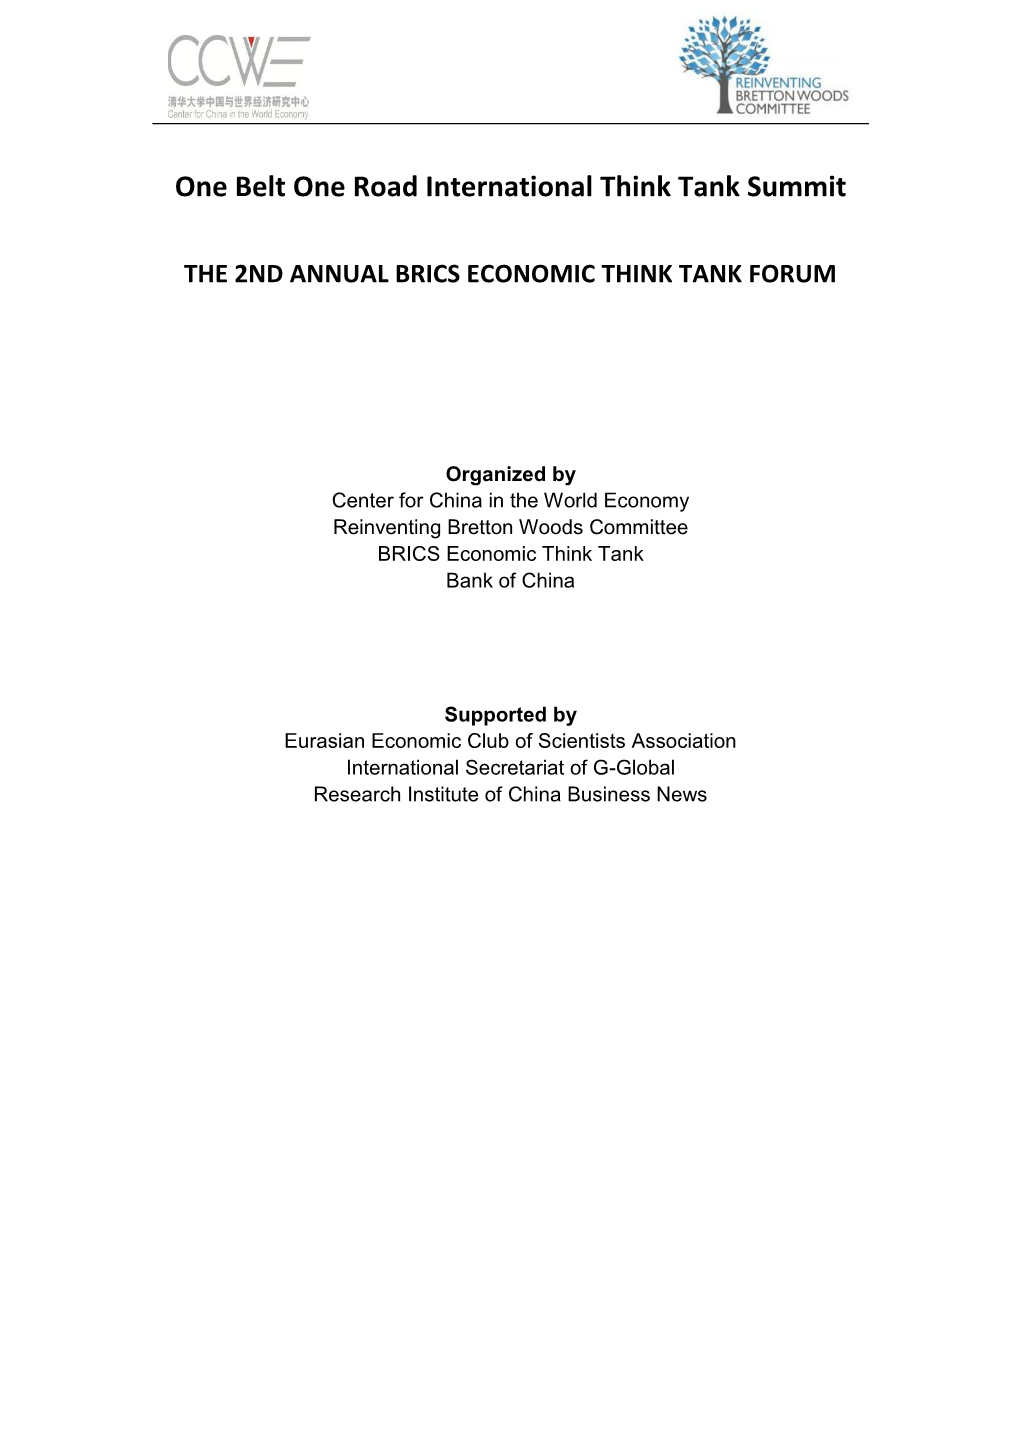 Forum Agenda (Subject to Updating)